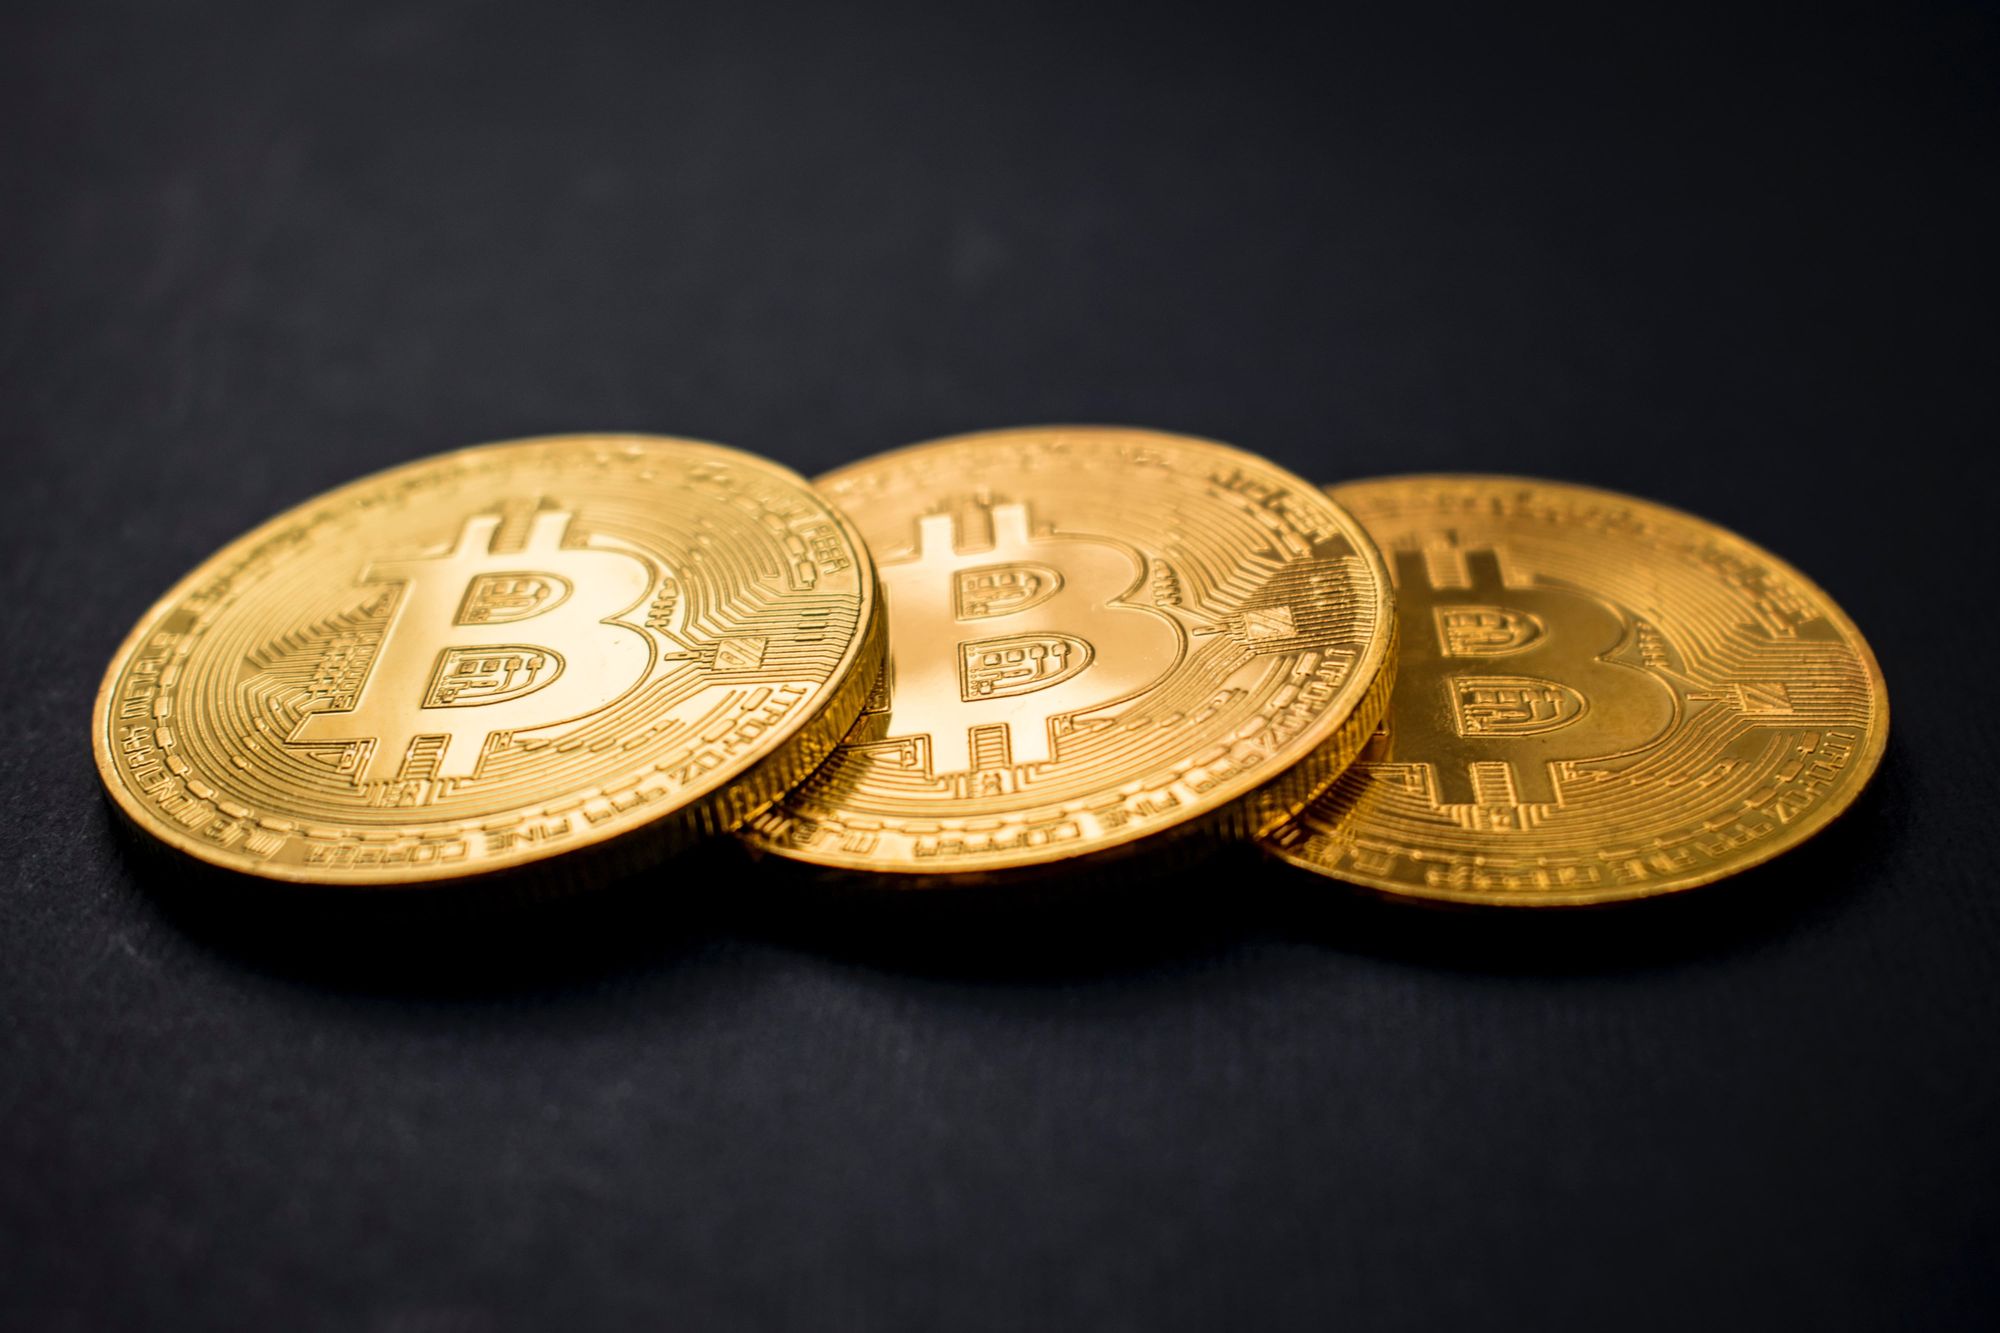 Bitcoins represented as actual coins